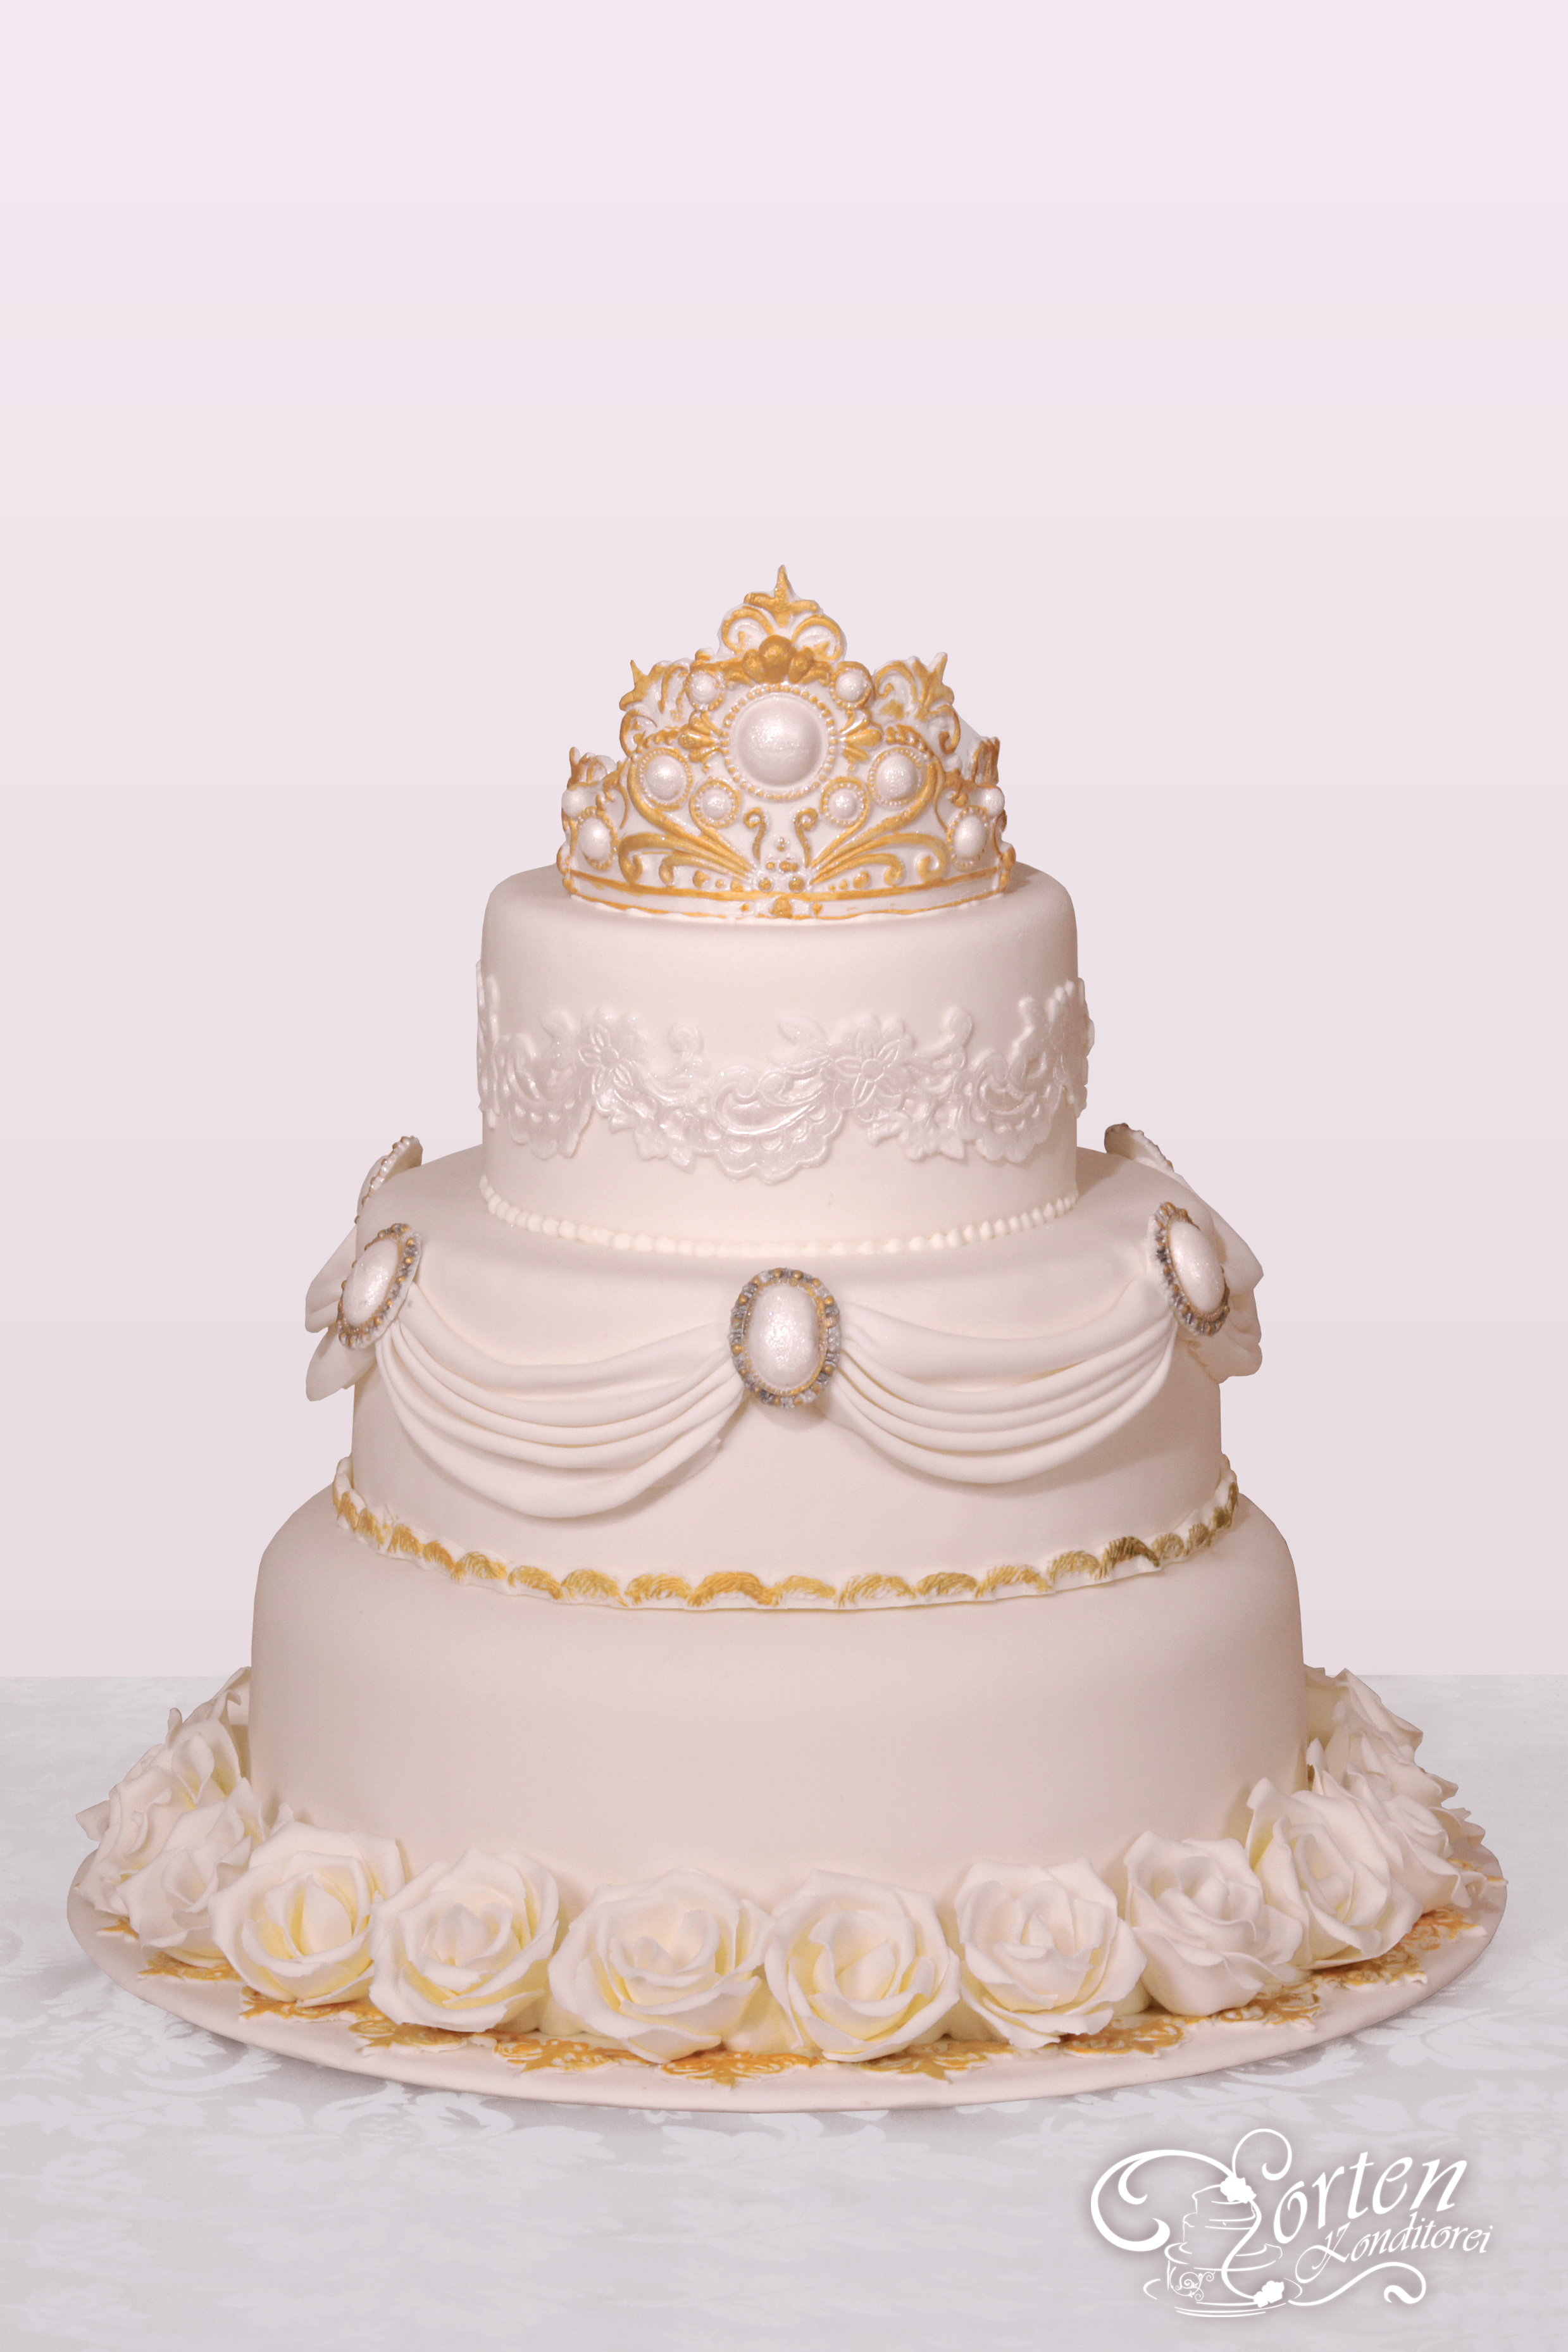 In königlichem Stil Dekoriete Hochzeitstorte mit Broschen Krone Rosen in Gold.